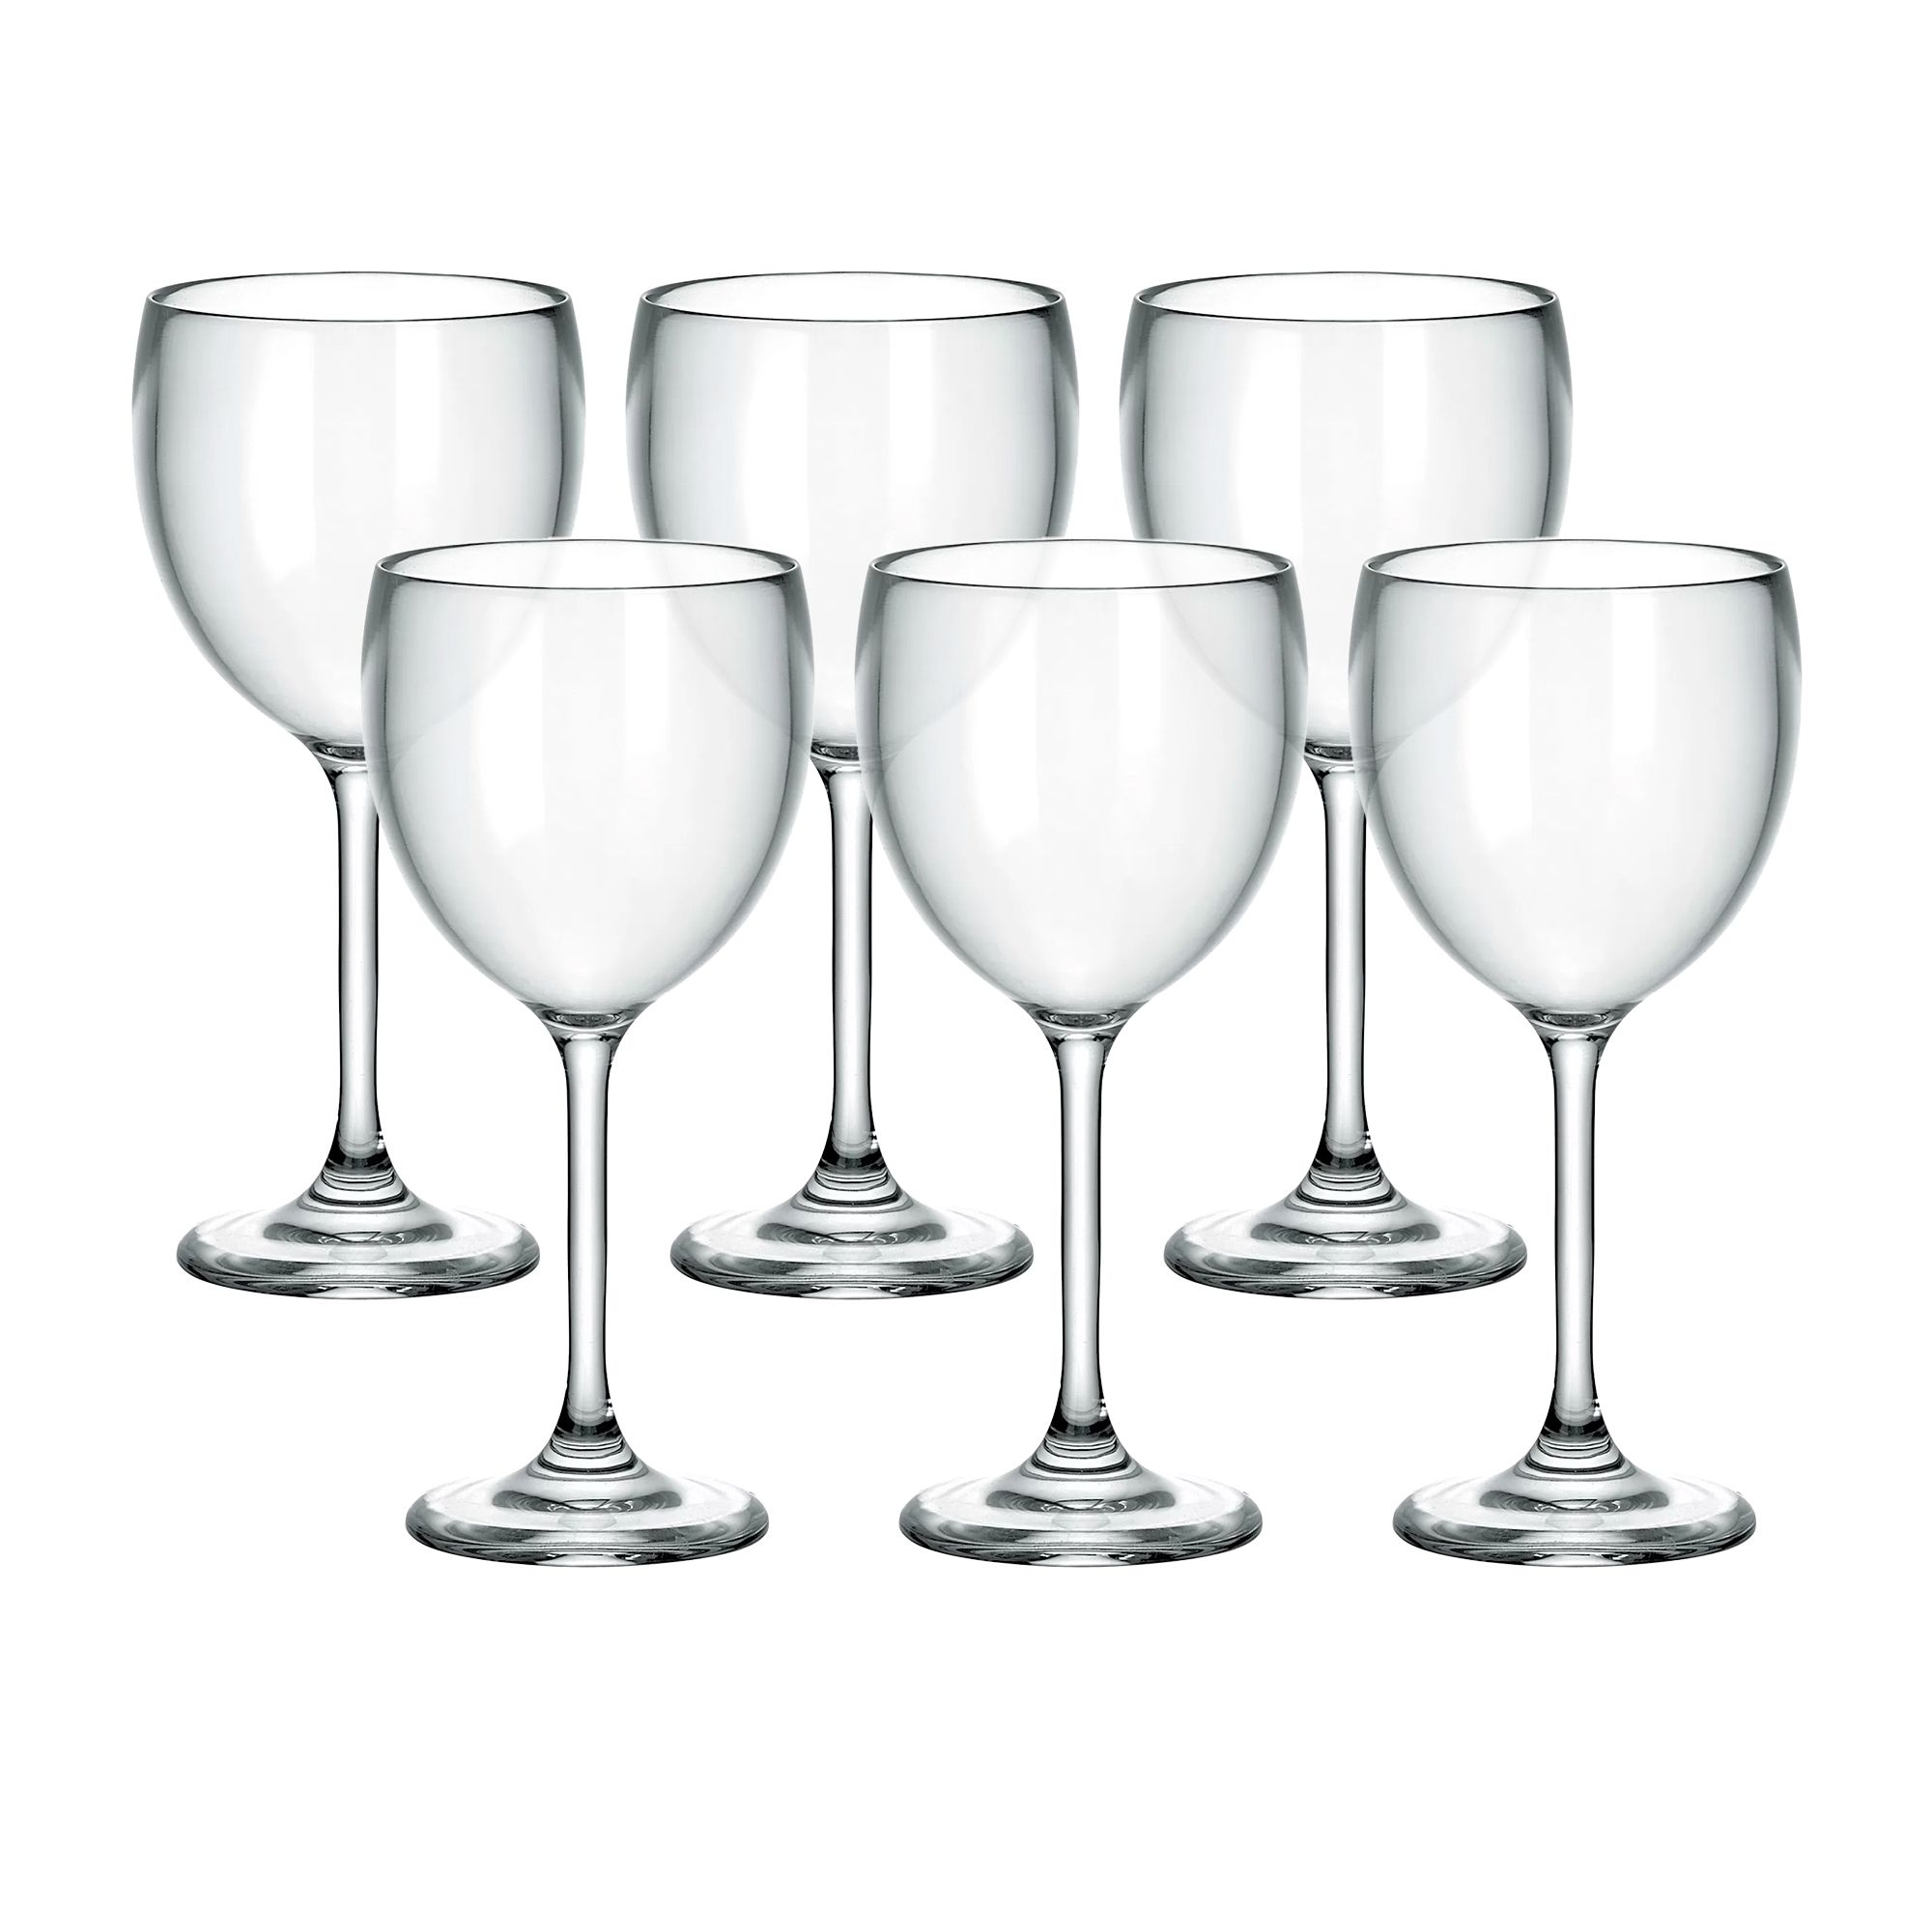 Guzzini Wine Glass 300ml Set of 6 Image 1